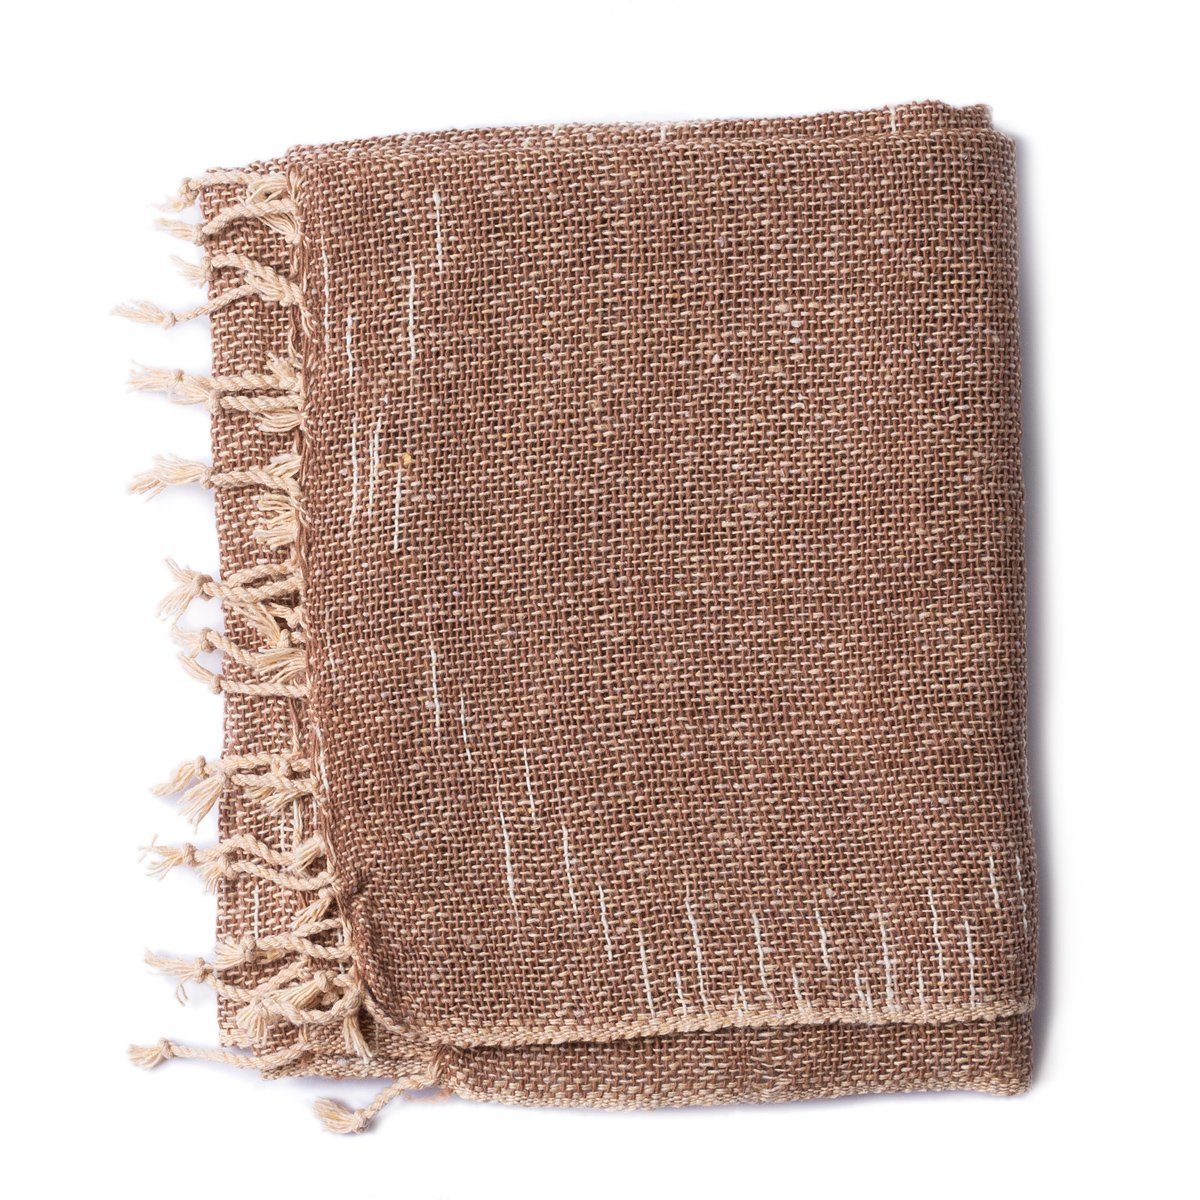 PANASIAM Halstuch warmer weicher Baumwollschal grob gewebt in verschiedenen Farben, auch als Schultertuch oder Schal im Herbst und Winter tragbar hellbraun